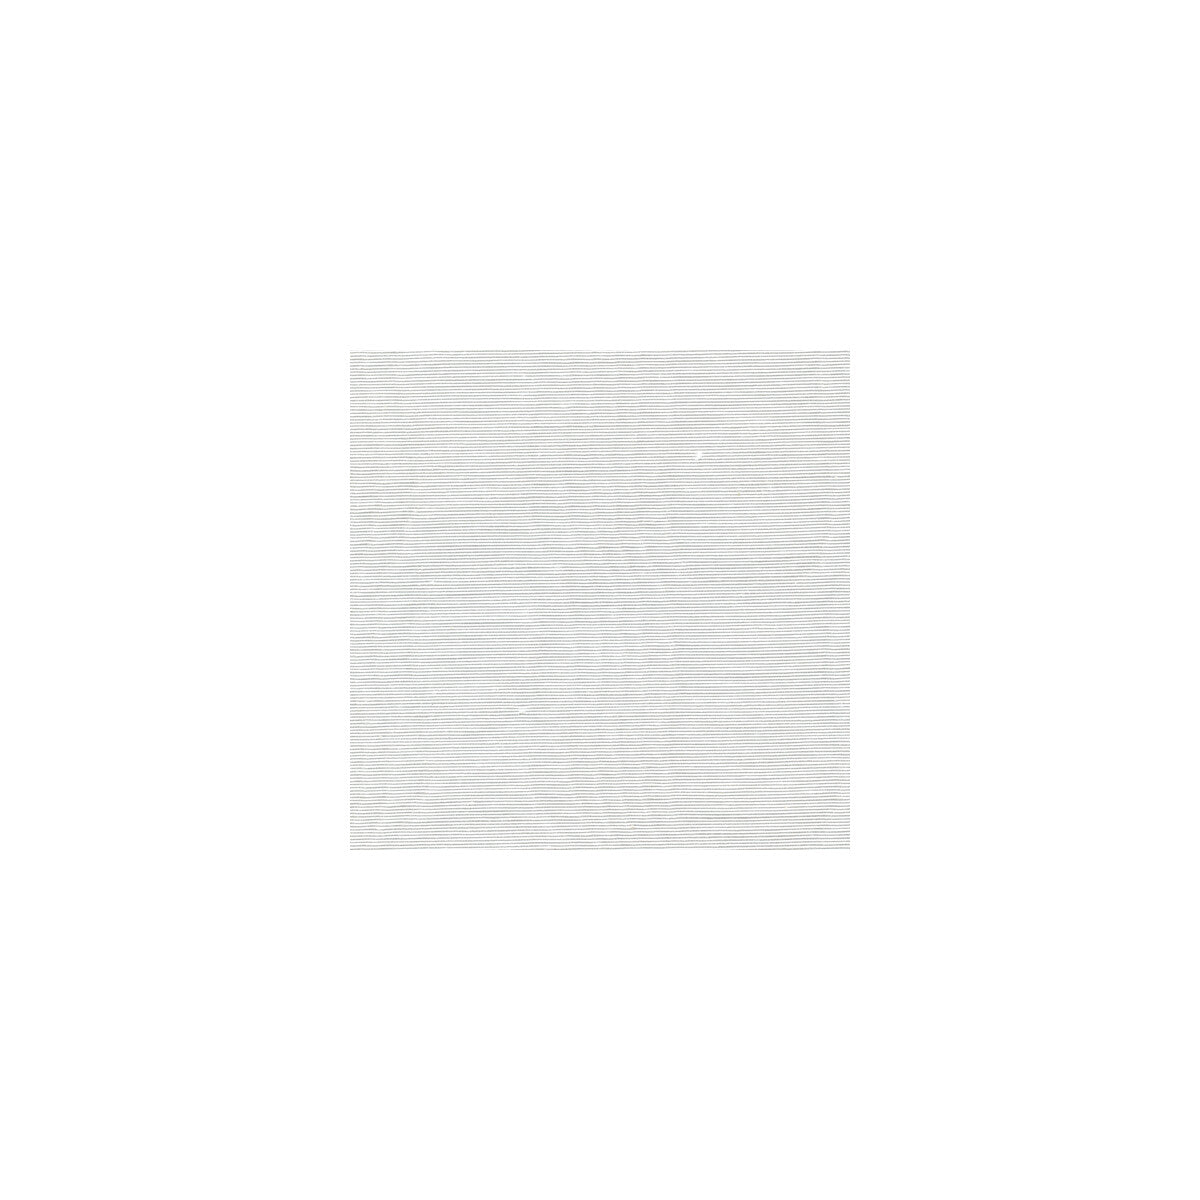 Kravet Basics fabric in 29674-101 color - pattern 29674.101.0 - by Kravet Basics